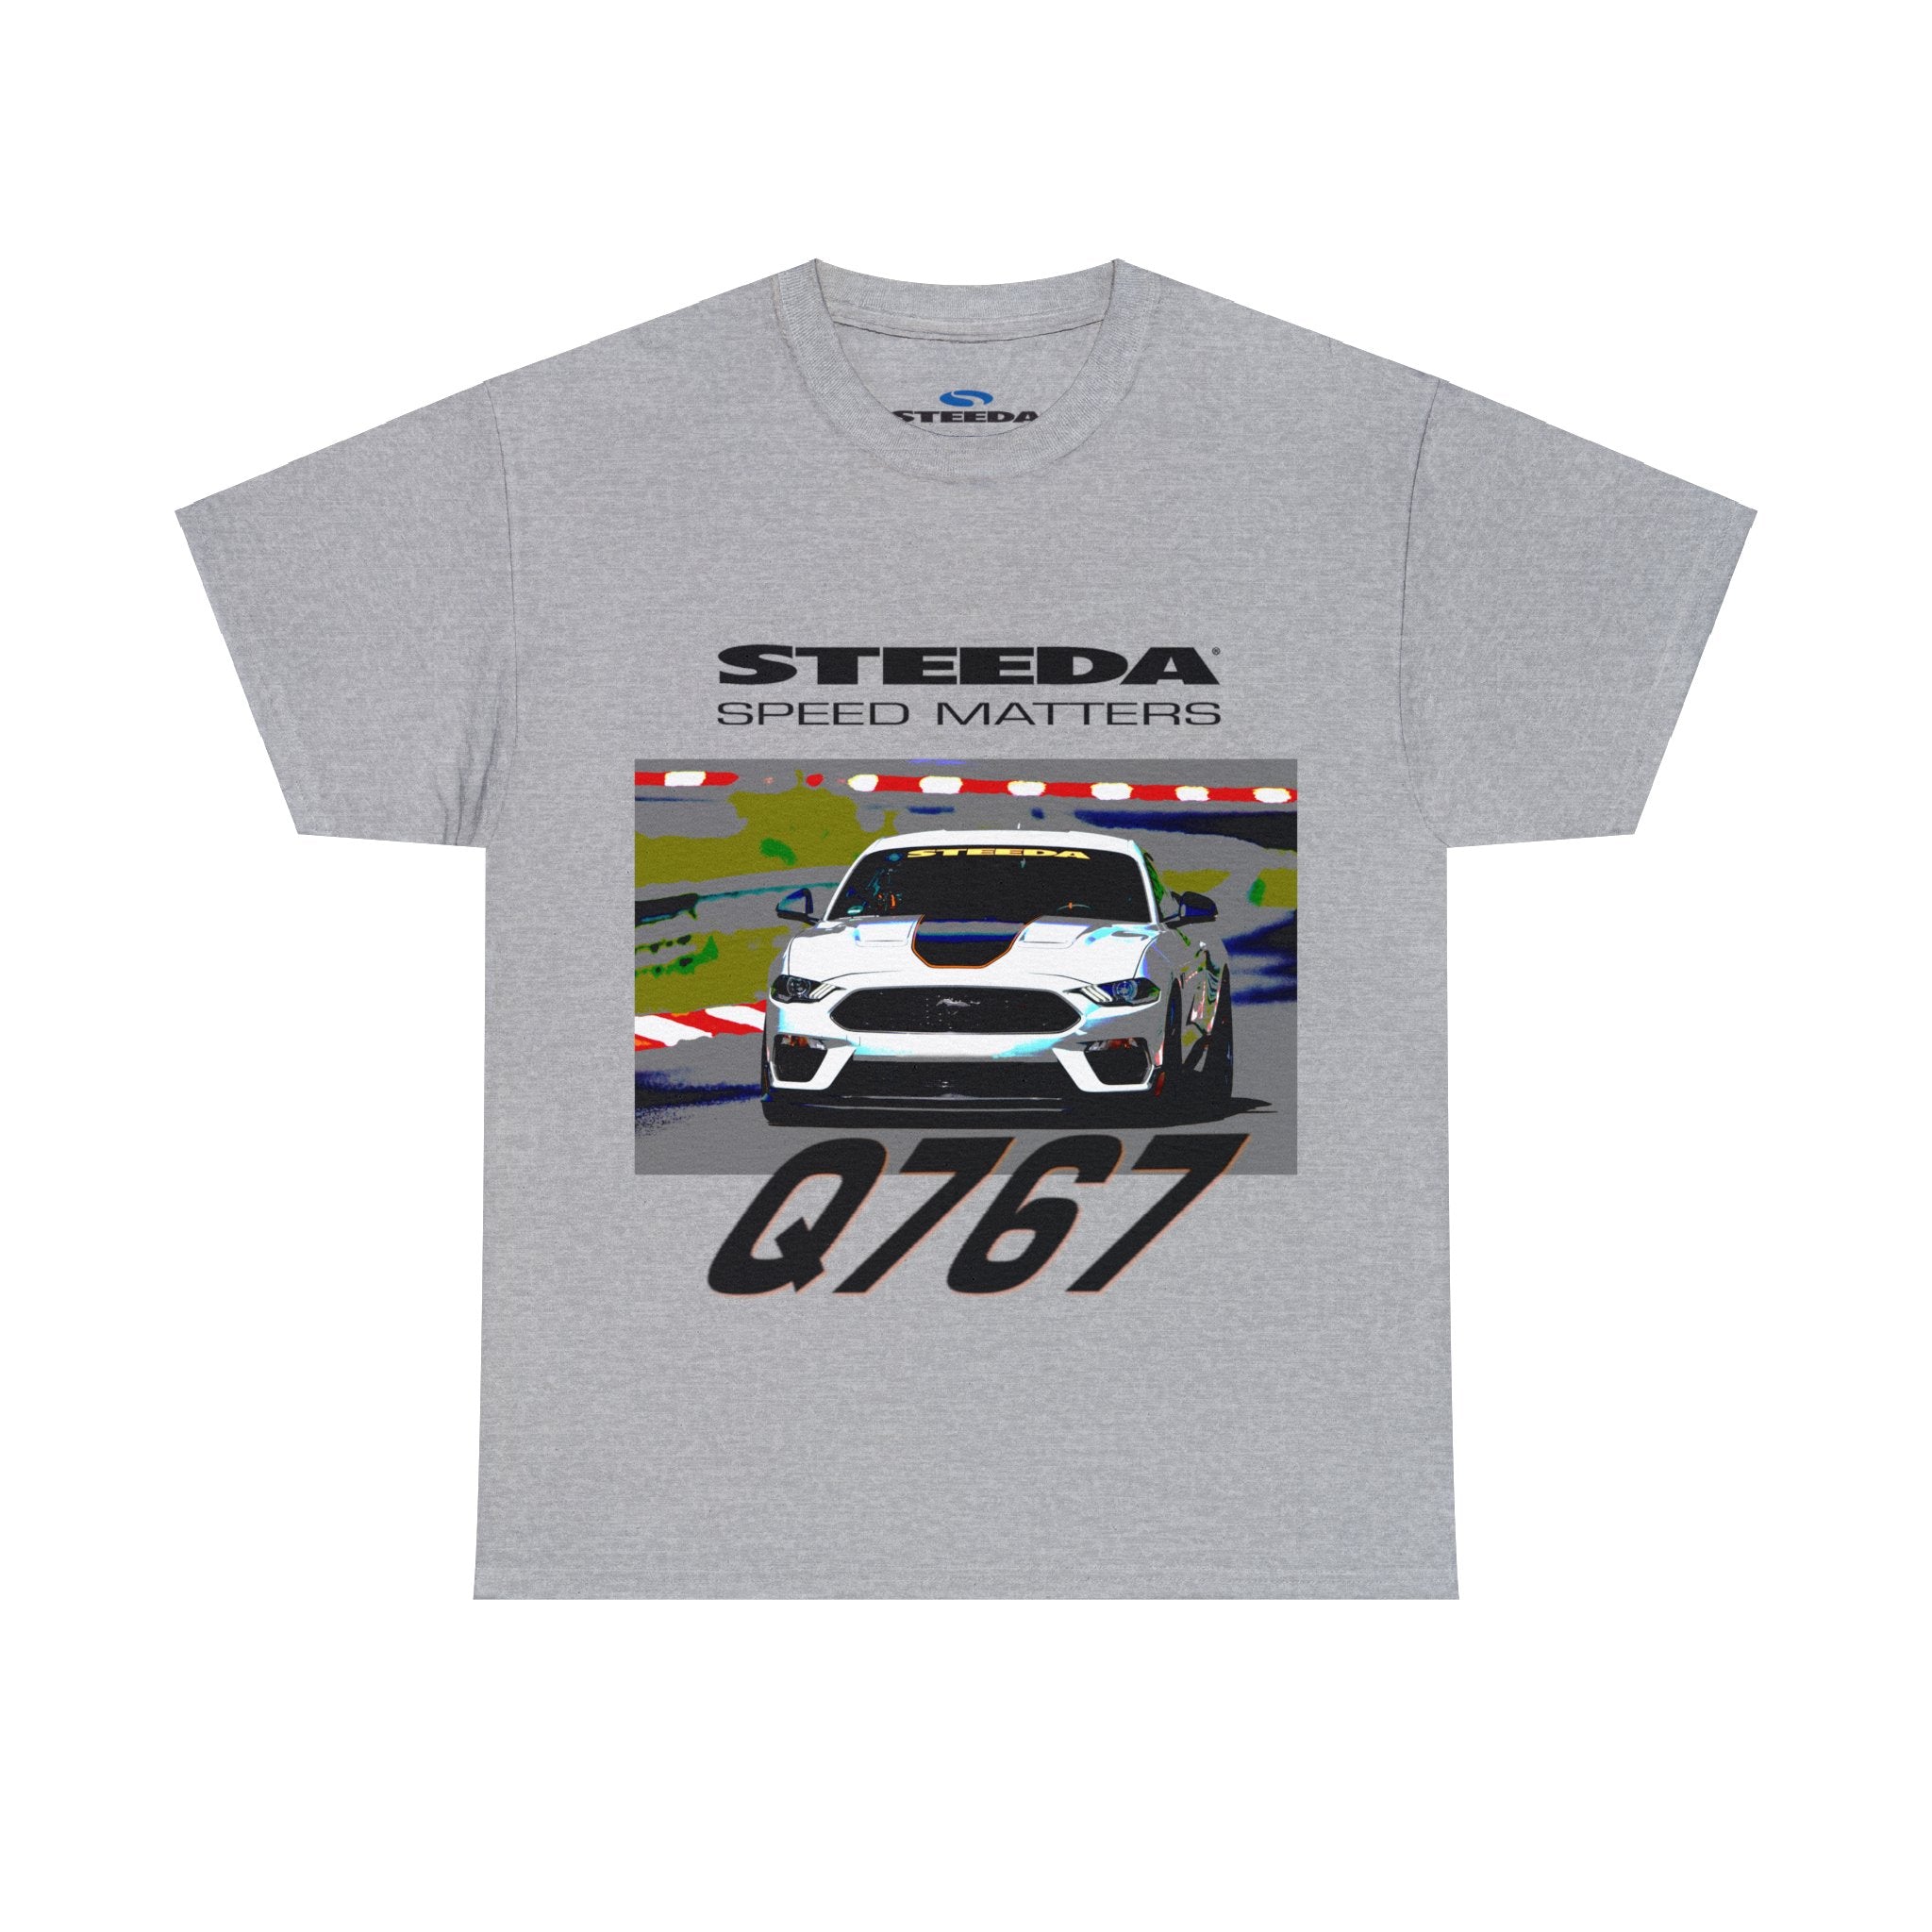 Steeda Q767 Mach 1 T Shirt